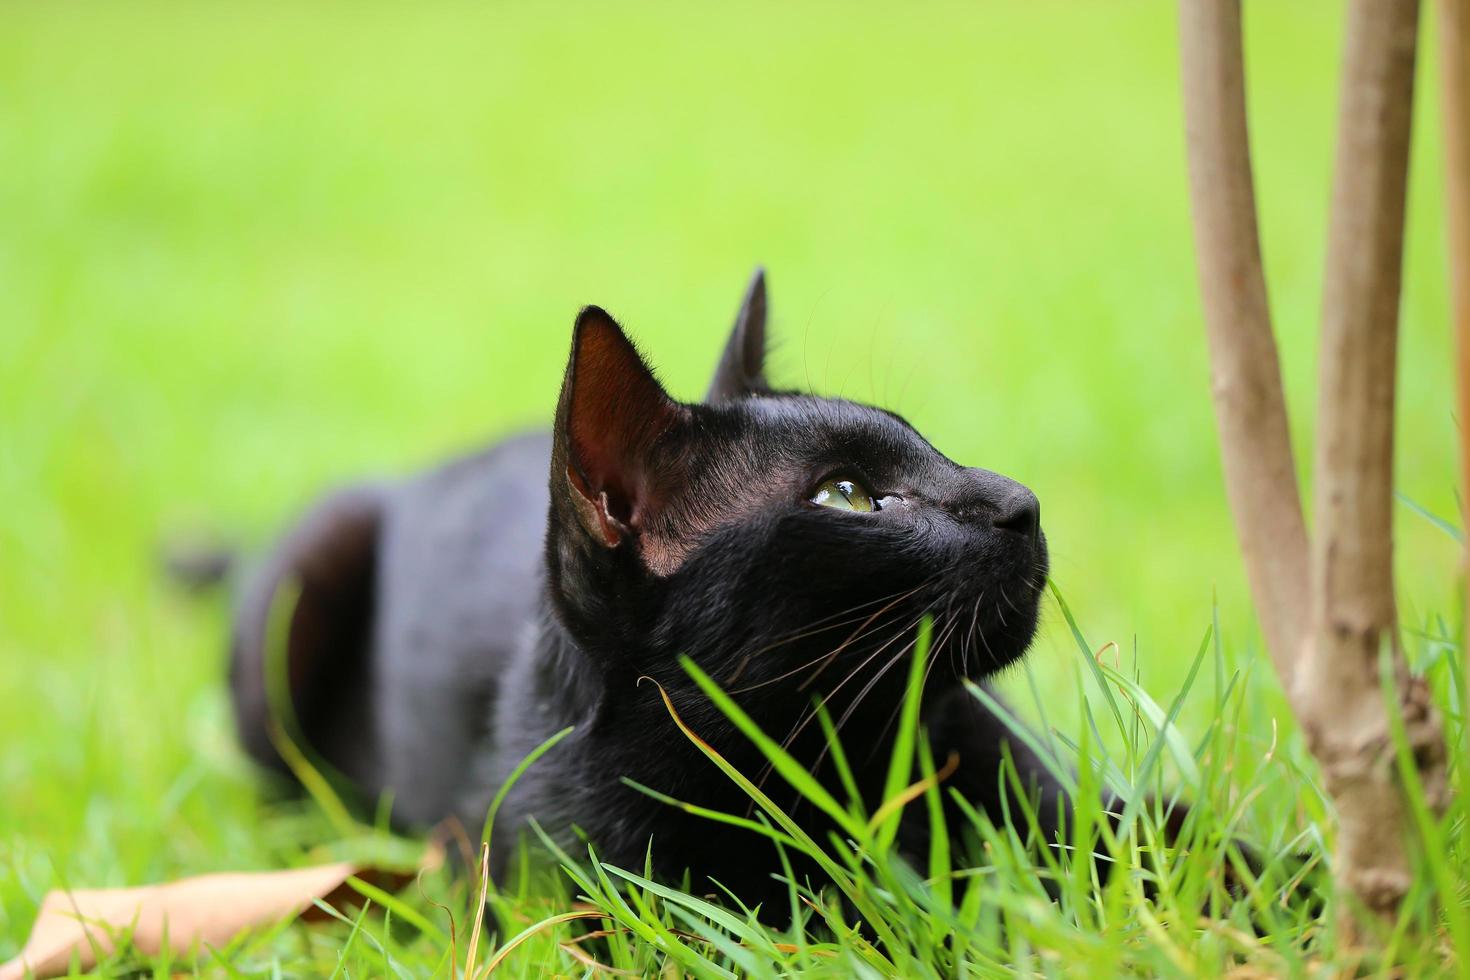 el gato negro joven caza en la hierba verde del césped. gatito tirado en la hierba en el parque en el día del sol foto